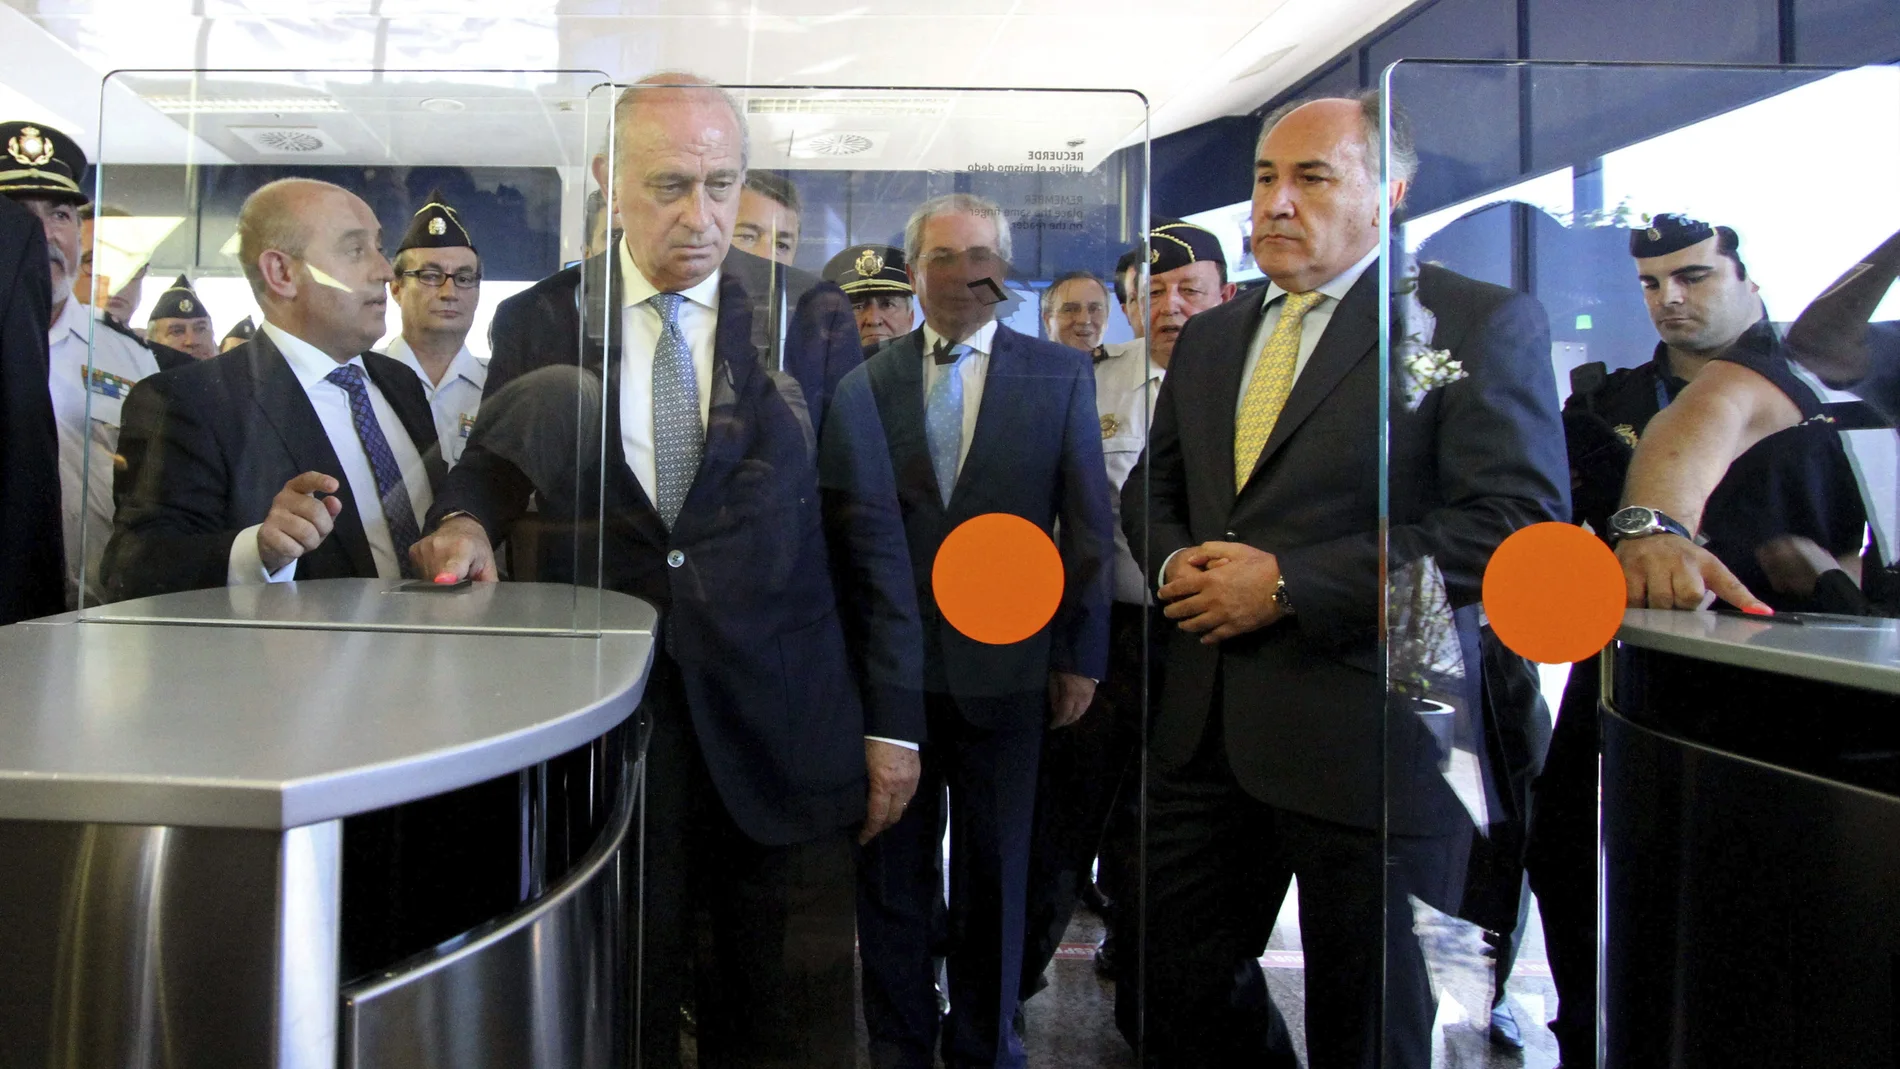 El ministro de interior Jorge Fernández Díaz inaugura las primas fronteras con reconocimiento facial